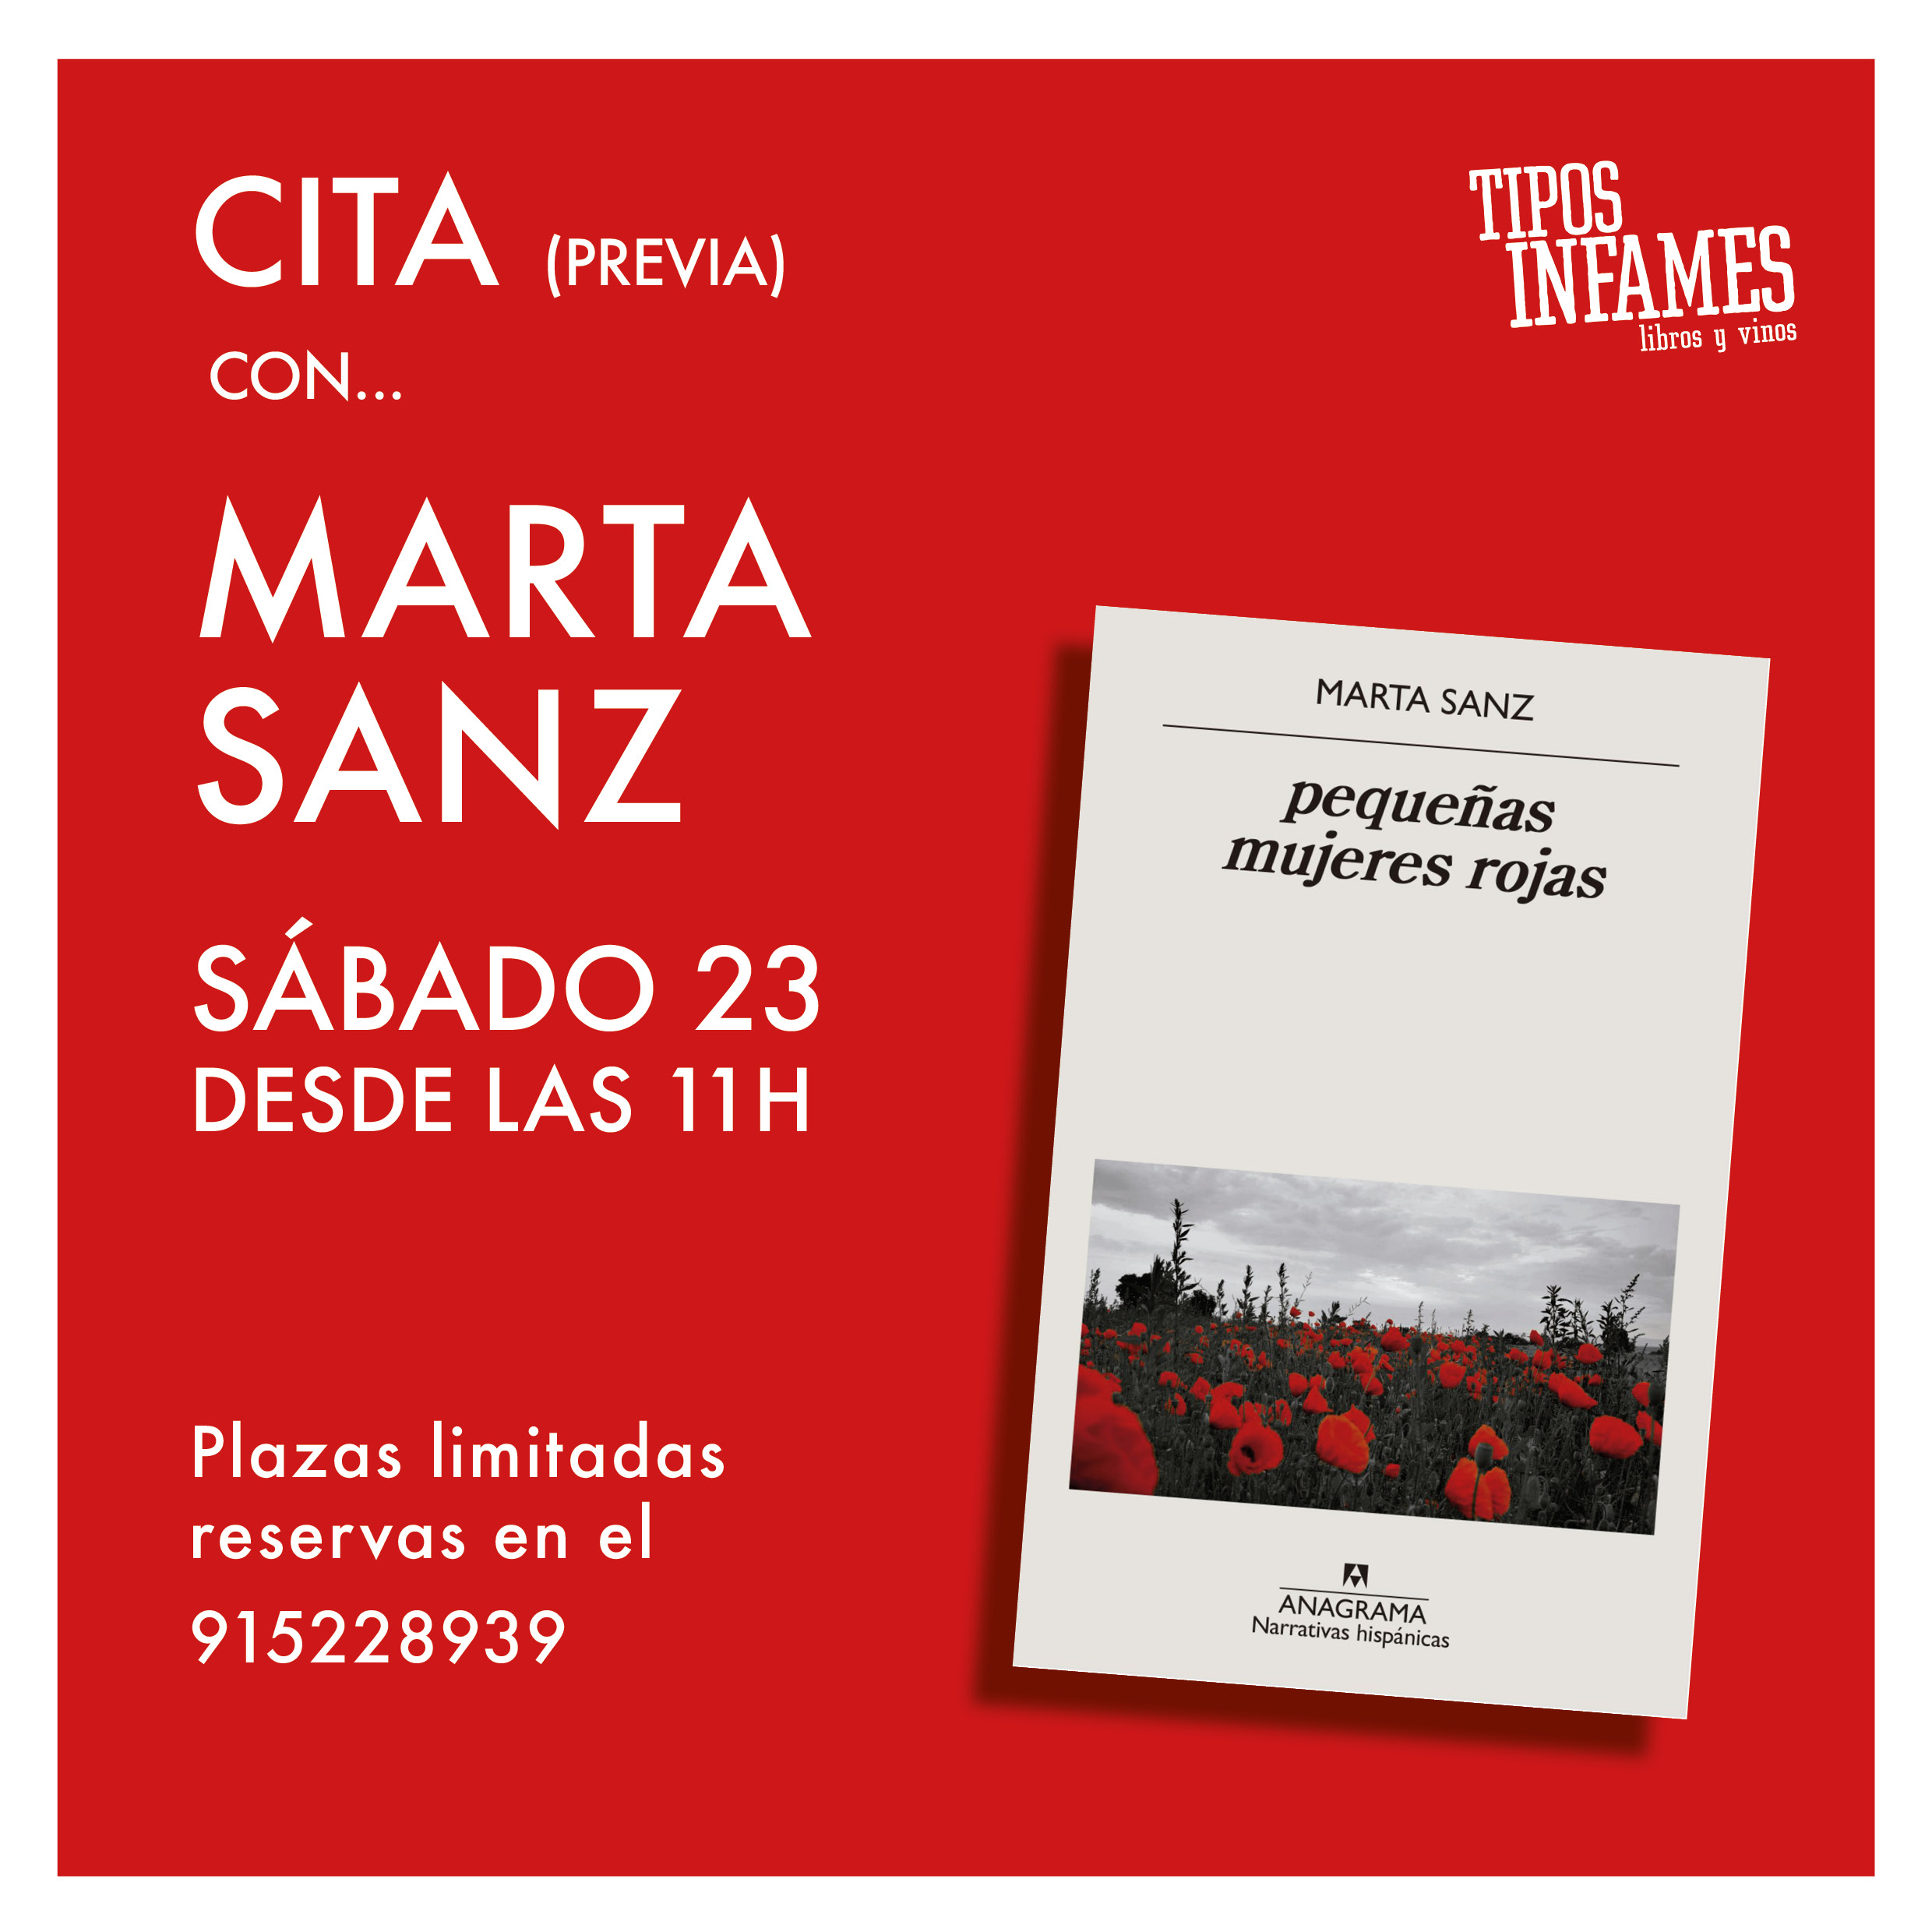 Cita (previa) con... Marta Sanz